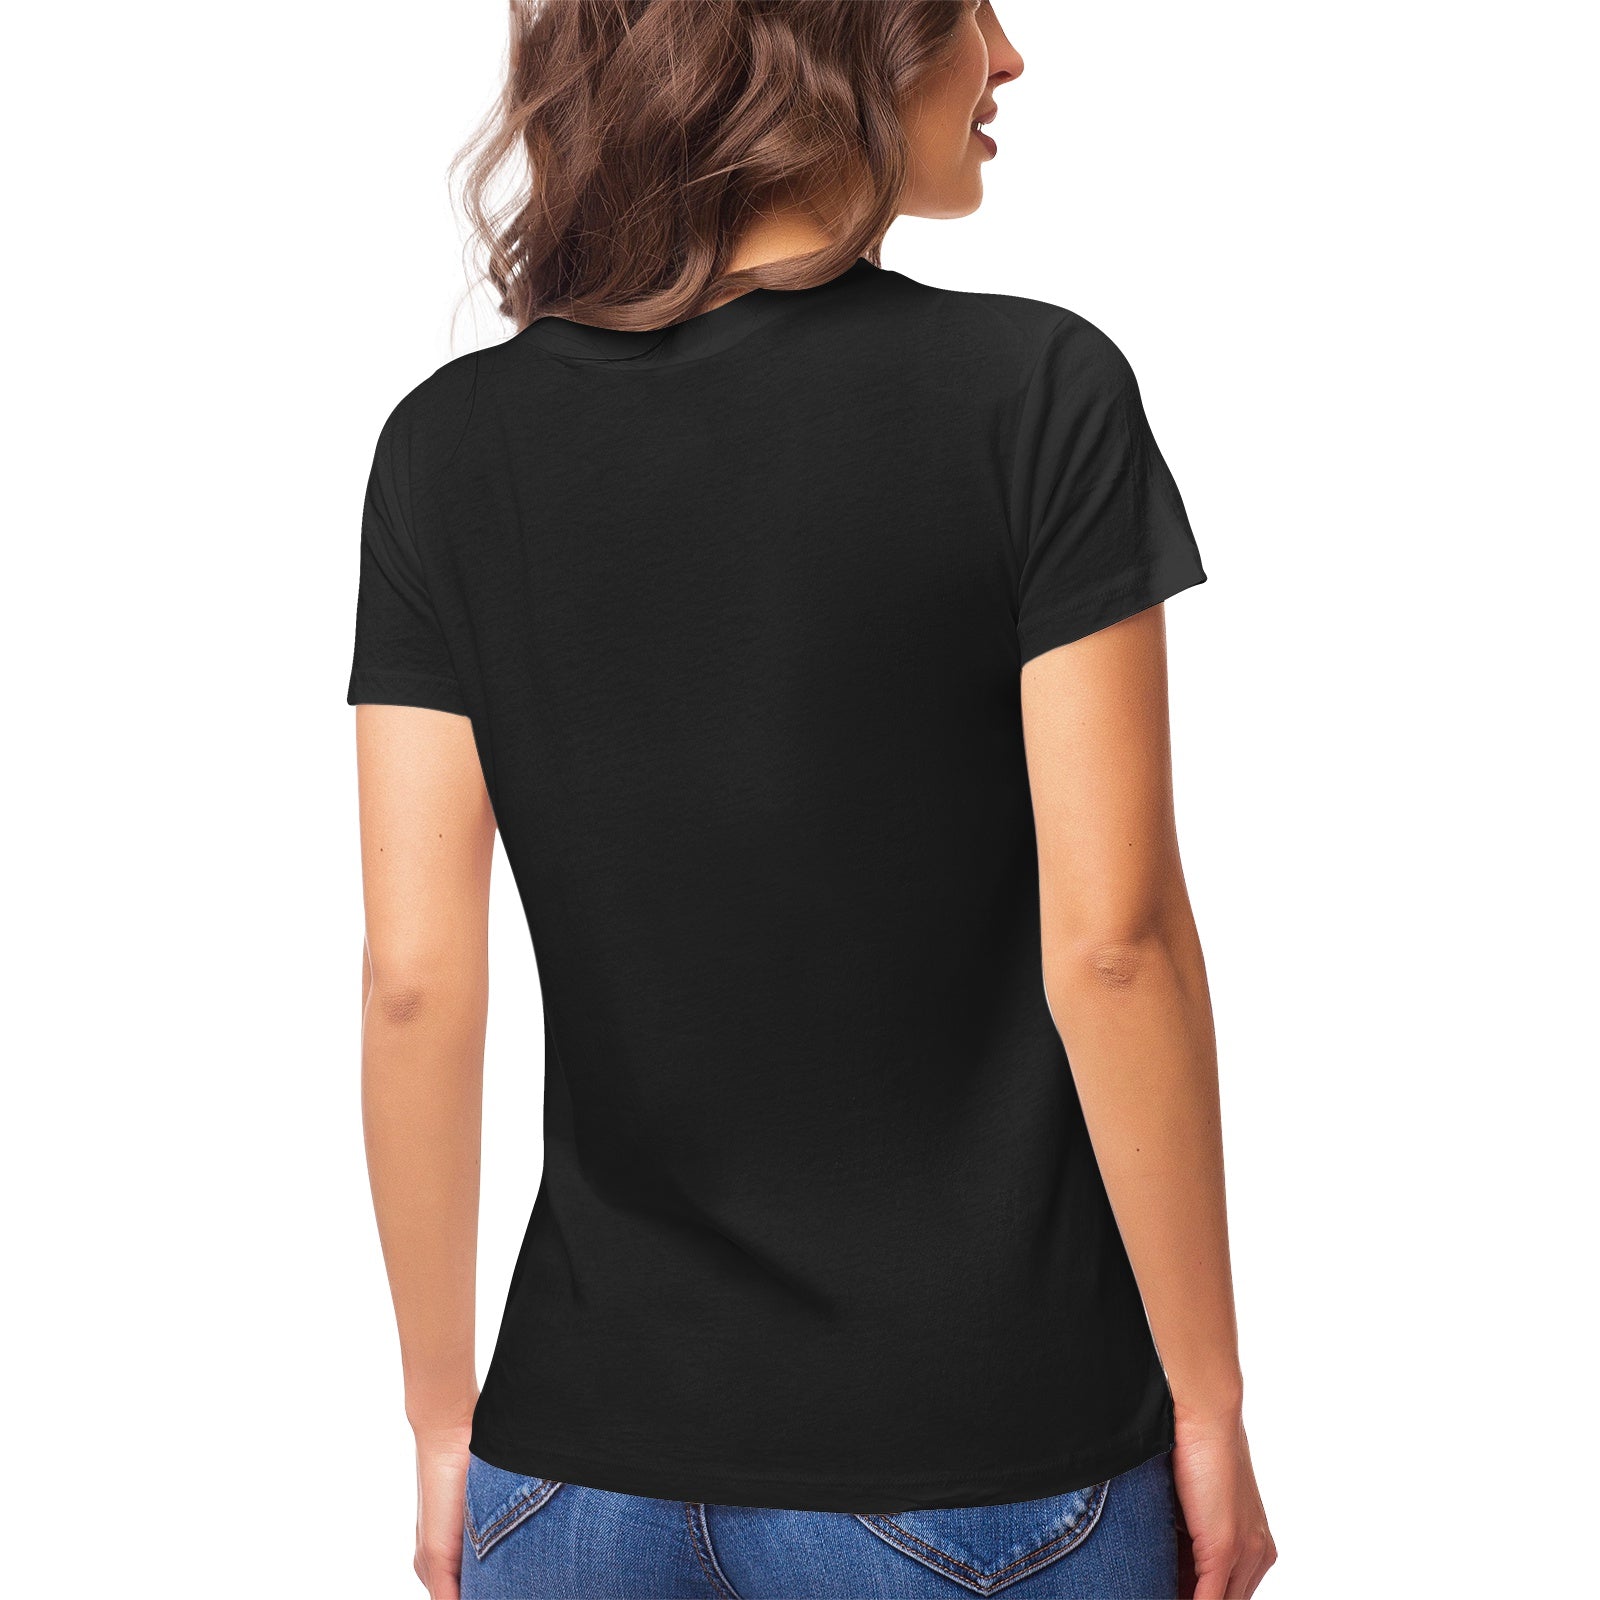 Fantasy 21 Women's Ultrasoft Pima Cotton T‑shirt - DromedarShop.com Online Boutique